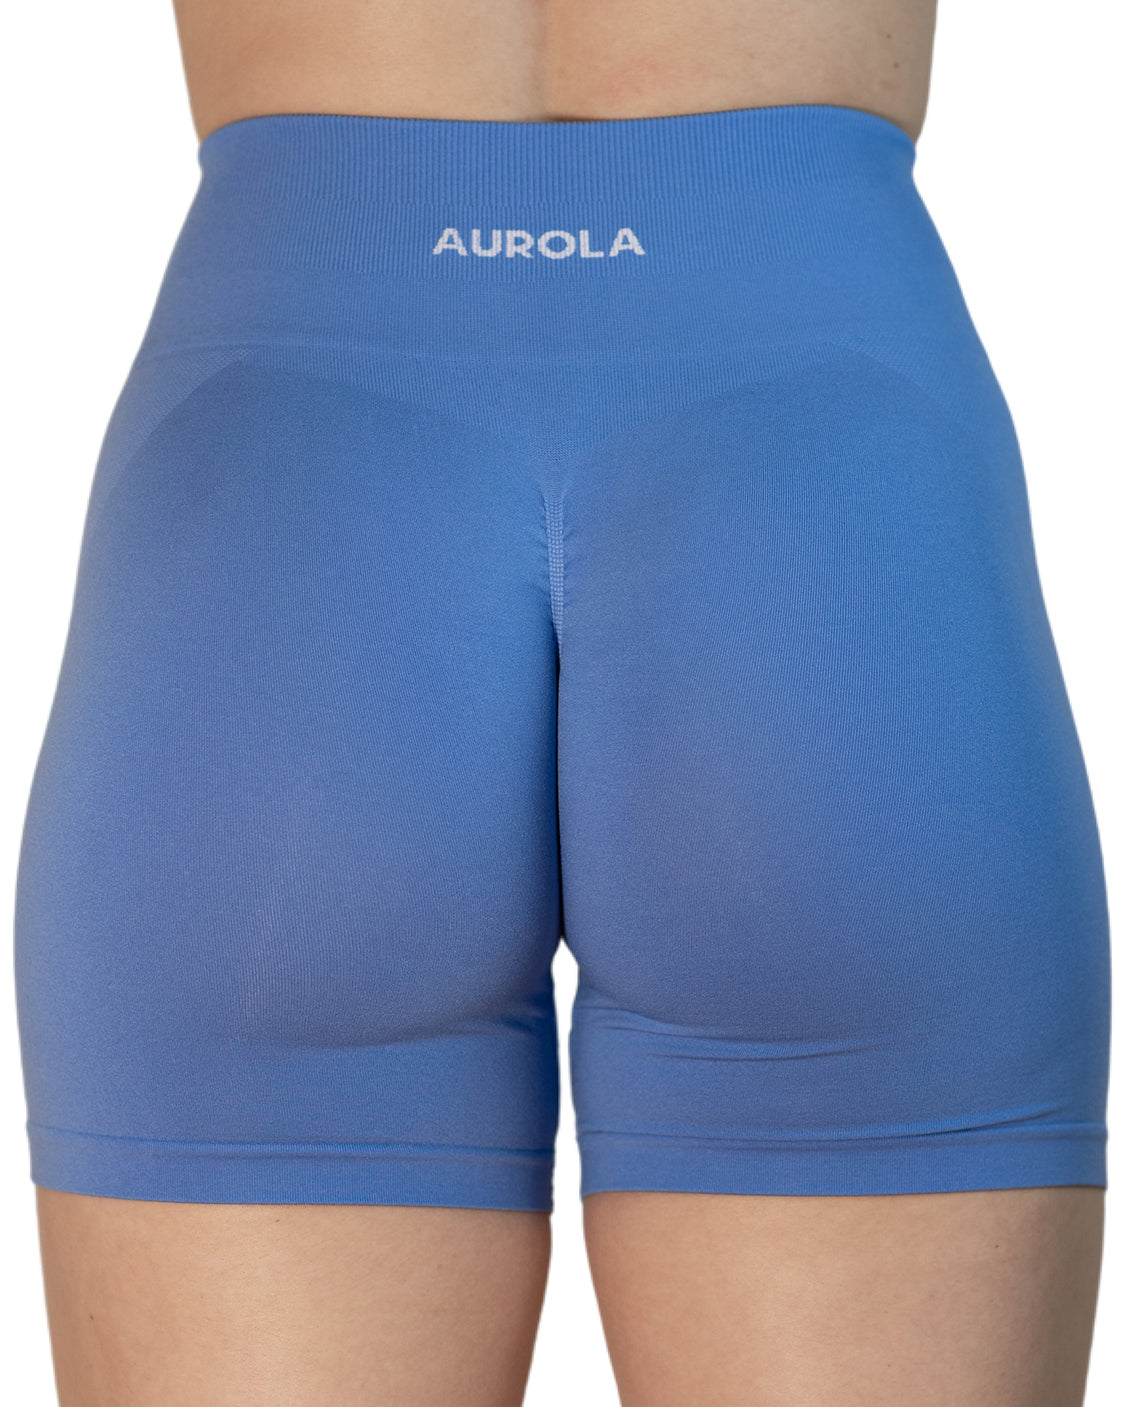 AUROLA Intensify V1.0 3.6 Shorts - Diamond Gusset